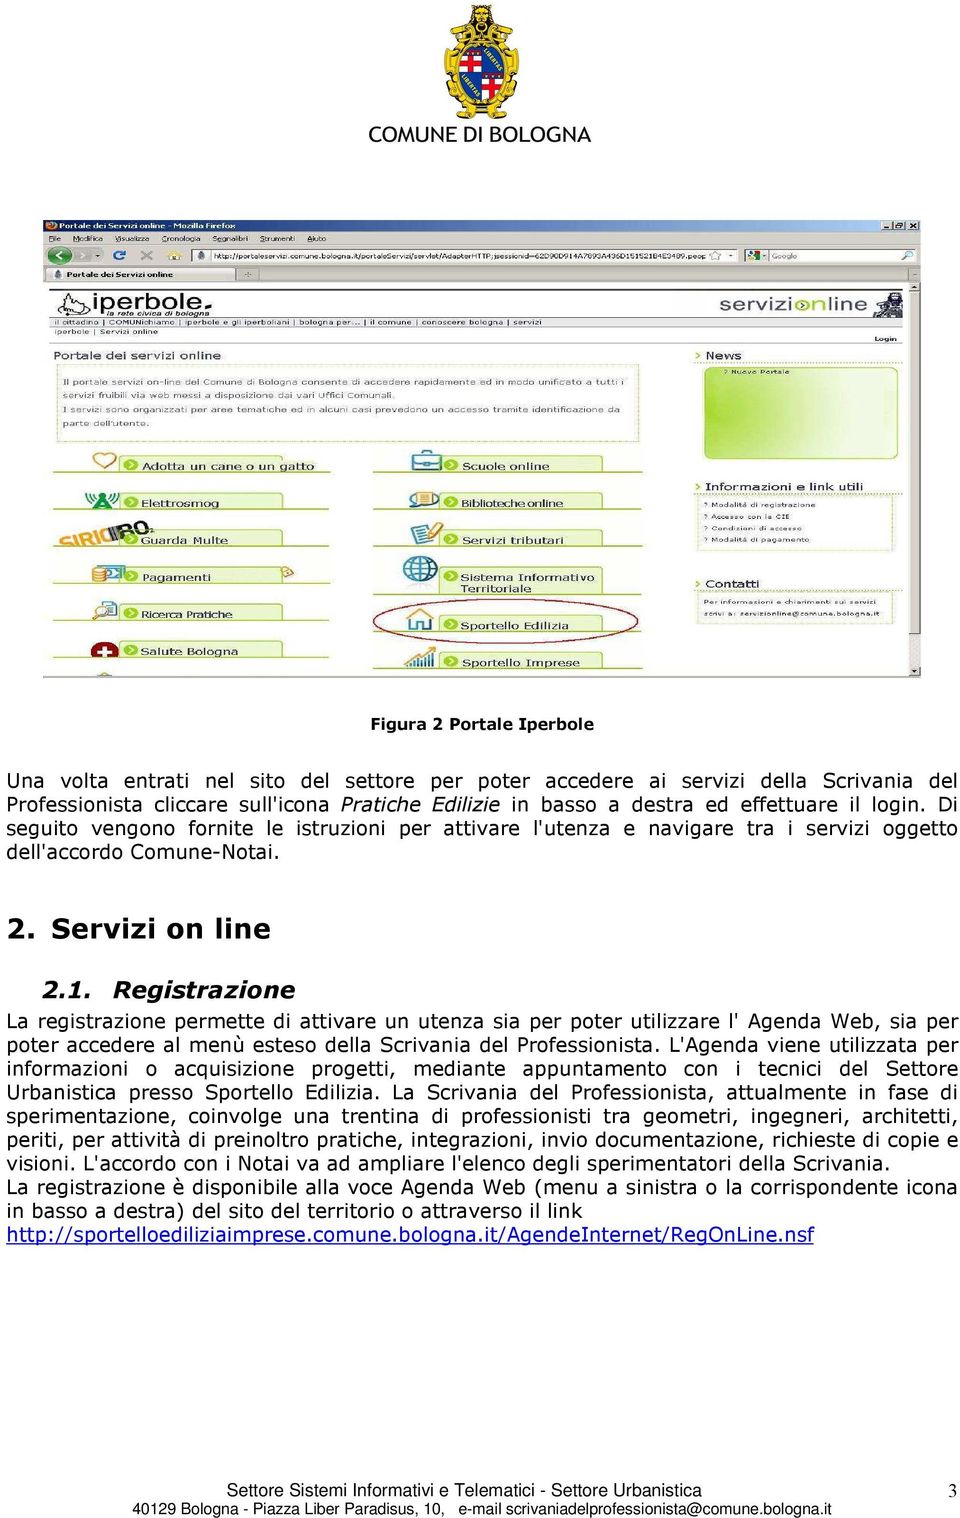 Registrazione La registrazione permette di attivare un utenza sia per poter utilizzare l' Agenda Web, sia per poter accedere al menù esteso della Scrivania del Professionista.